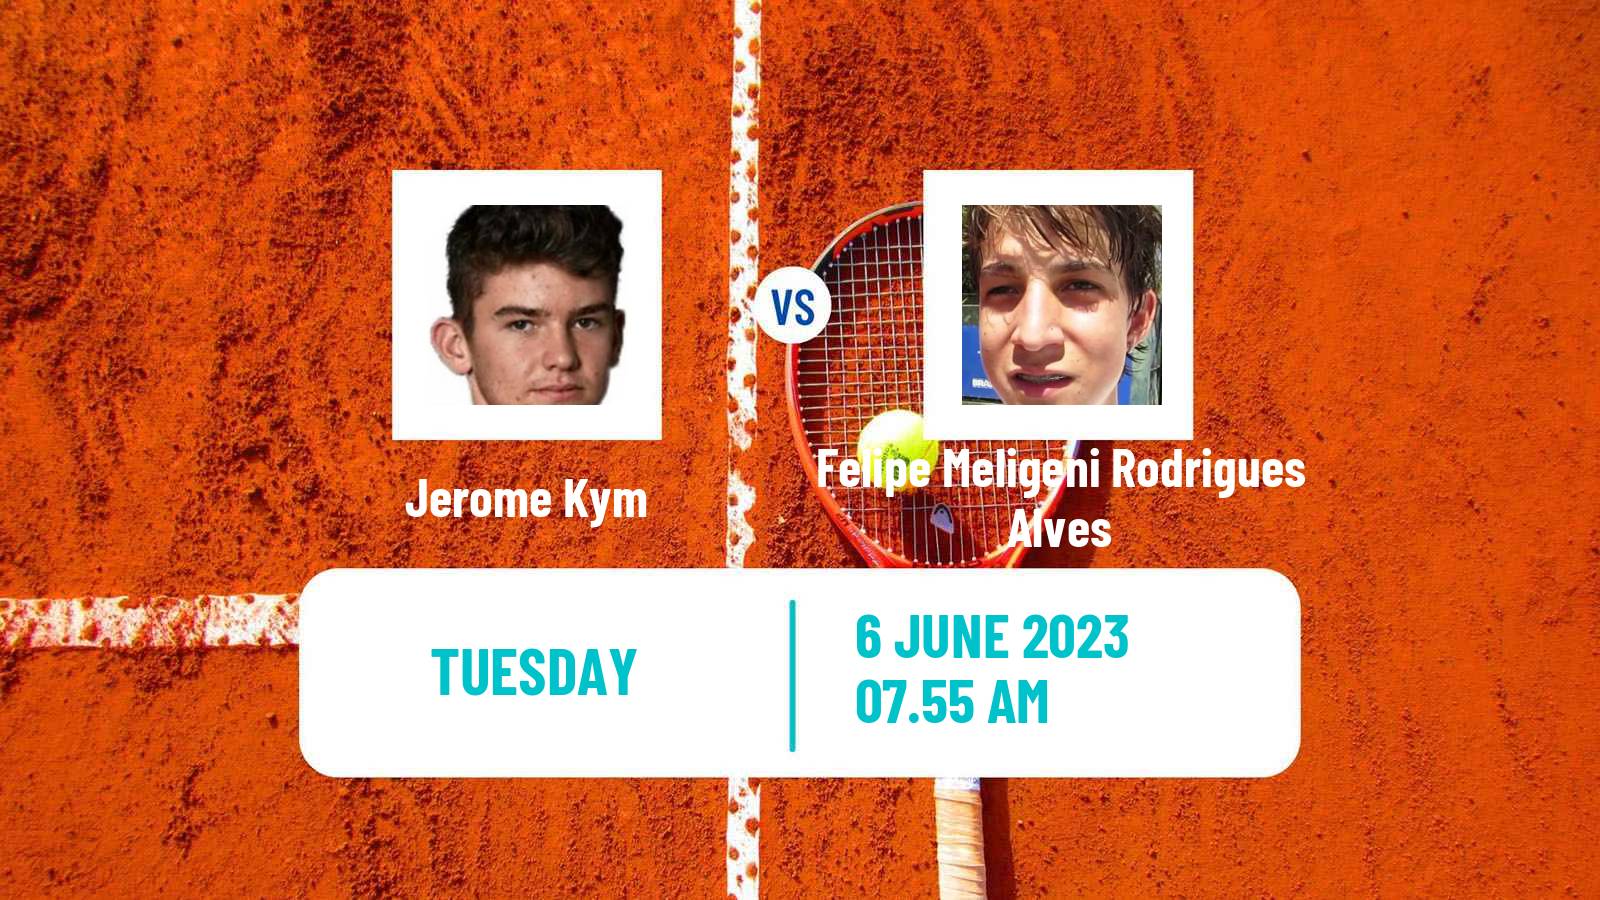 Tennis Heilbronn Challenger Men Jerome Kym - Felipe Meligeni Rodrigues Alves